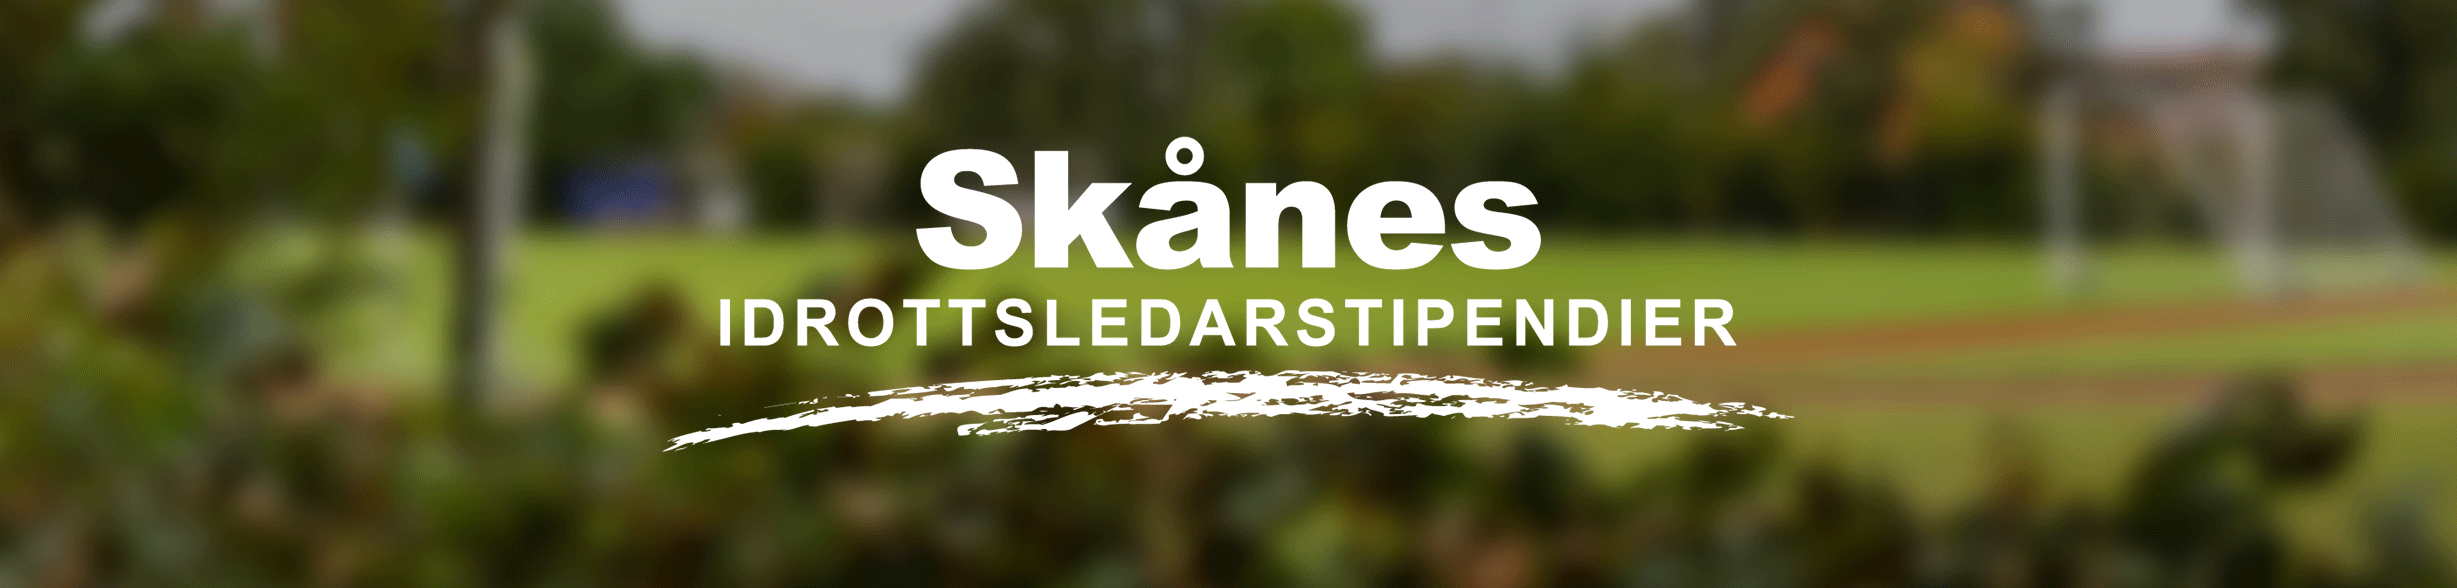 Skånes idrottsledarstipendier ett samarbete mellan RF-SISU Skåne, Swedbank och Sparbanken Skåne